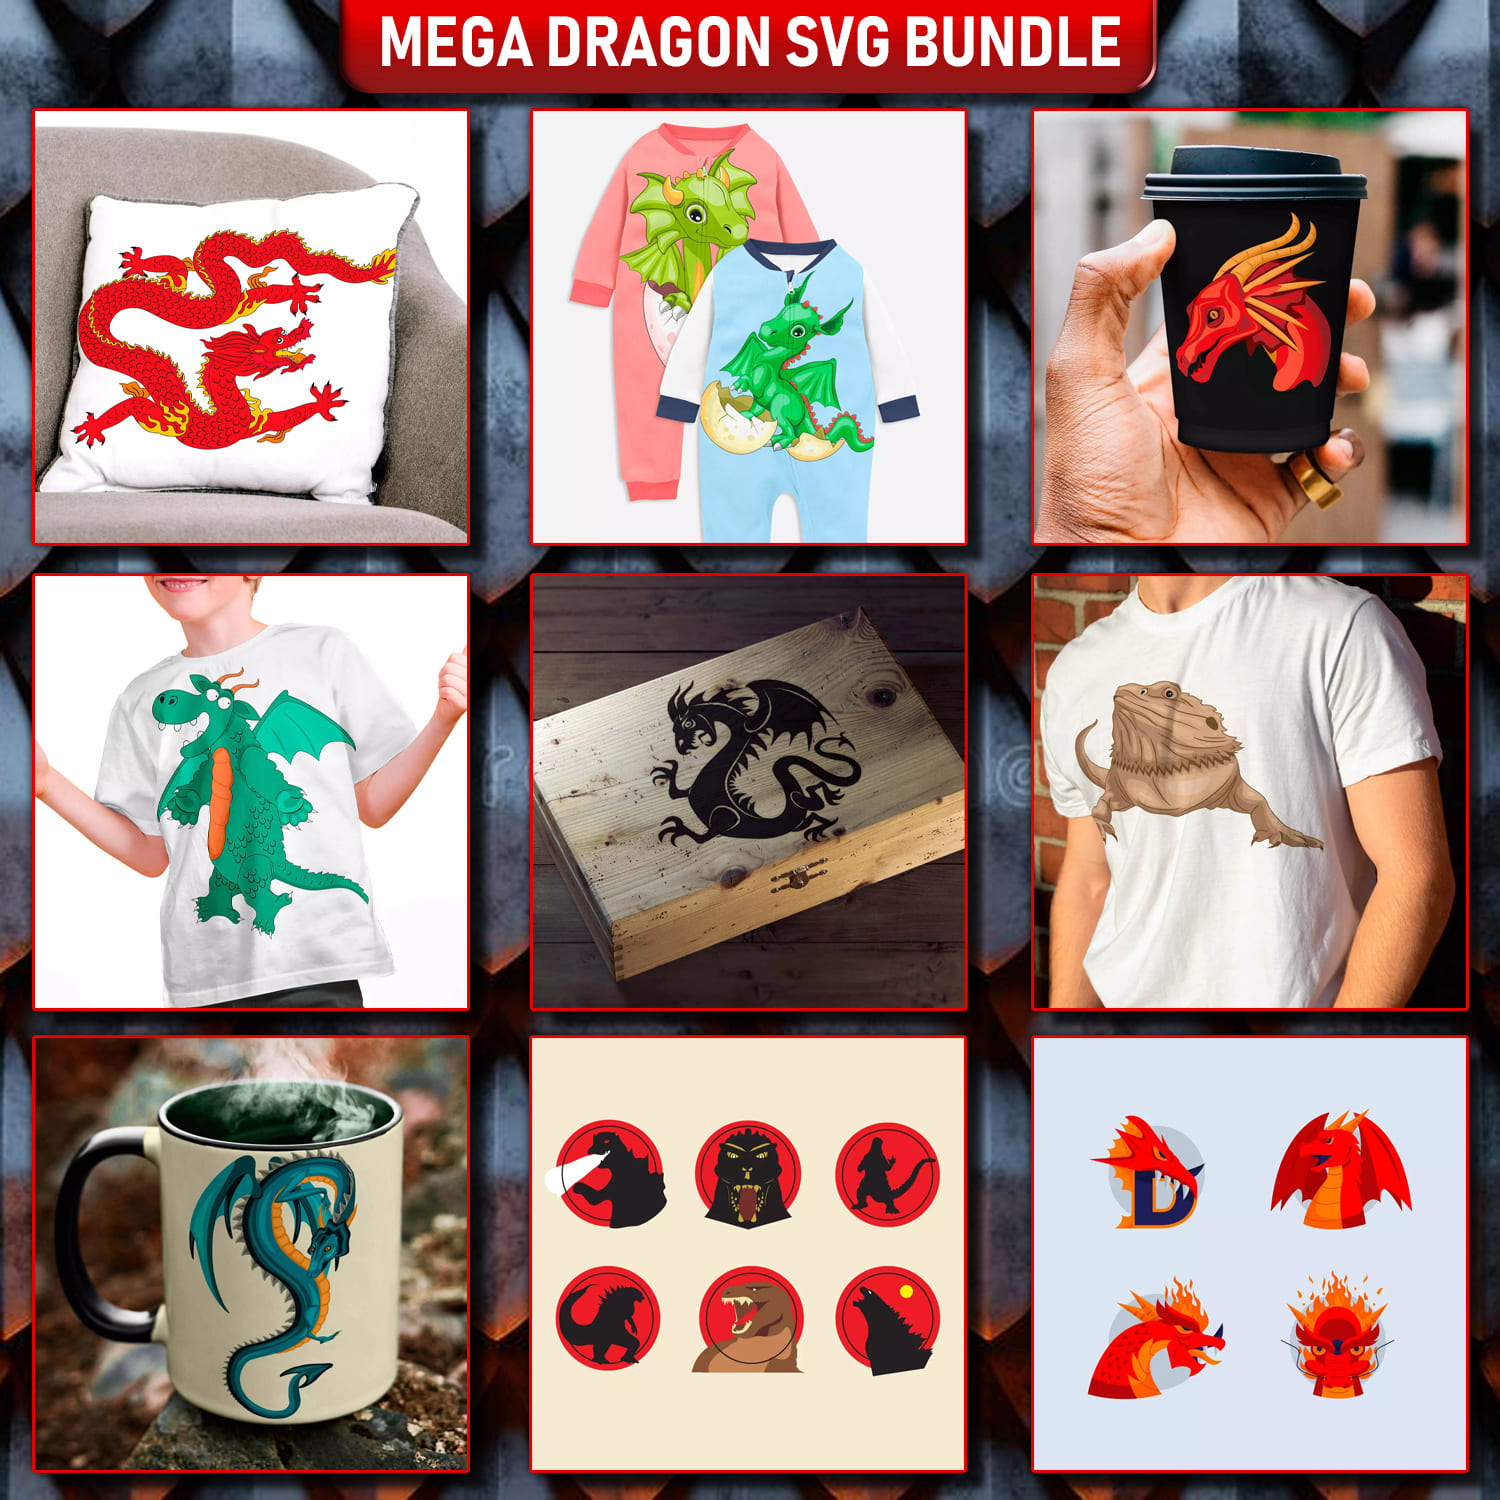 Mega Dragon SVG Design Bundle cover image.